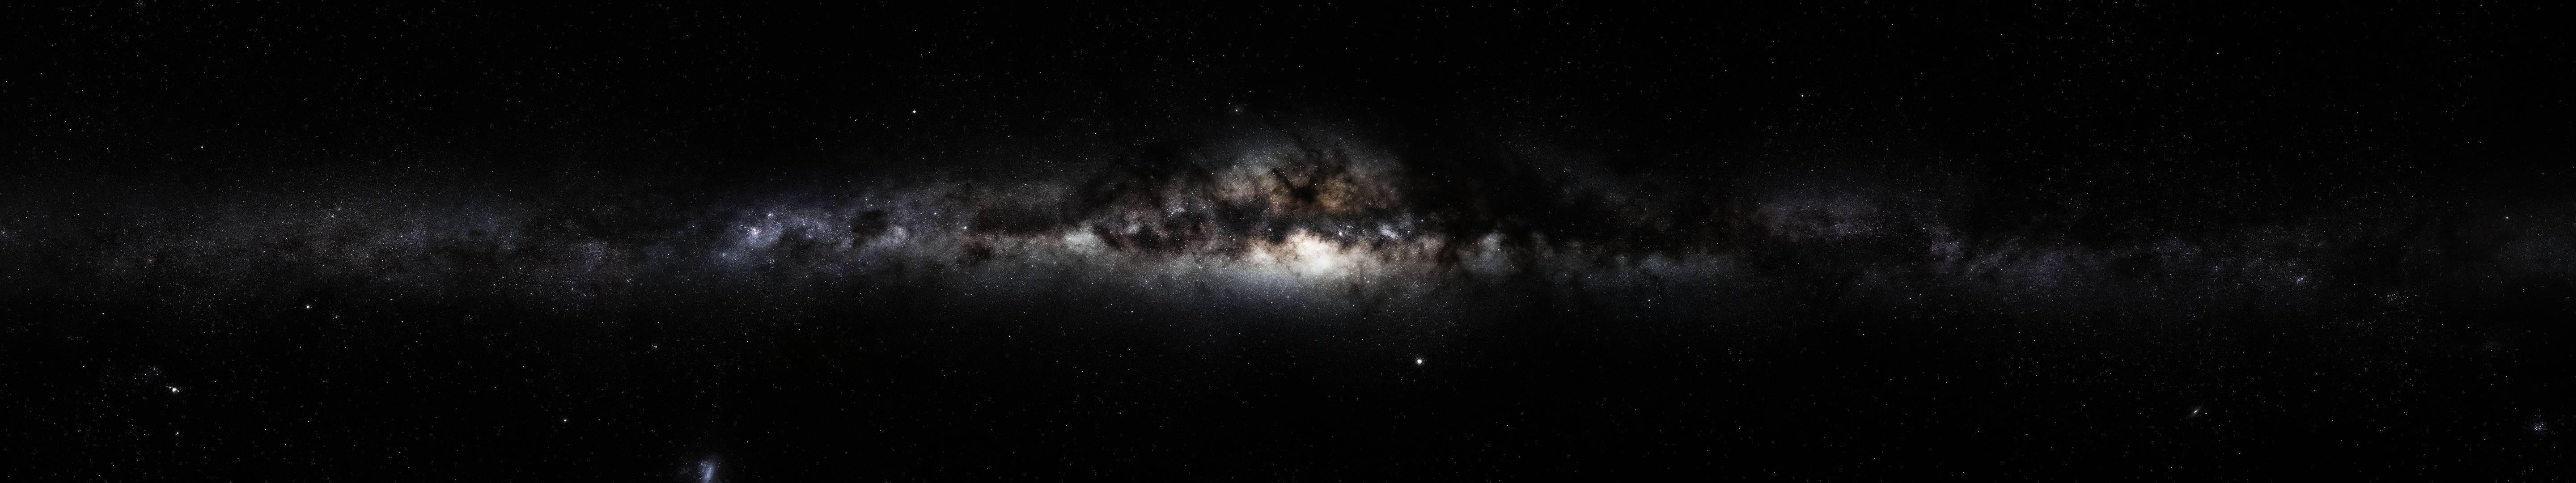 Milky Way, Space, Galaxy, Triple Screen Wallpaper